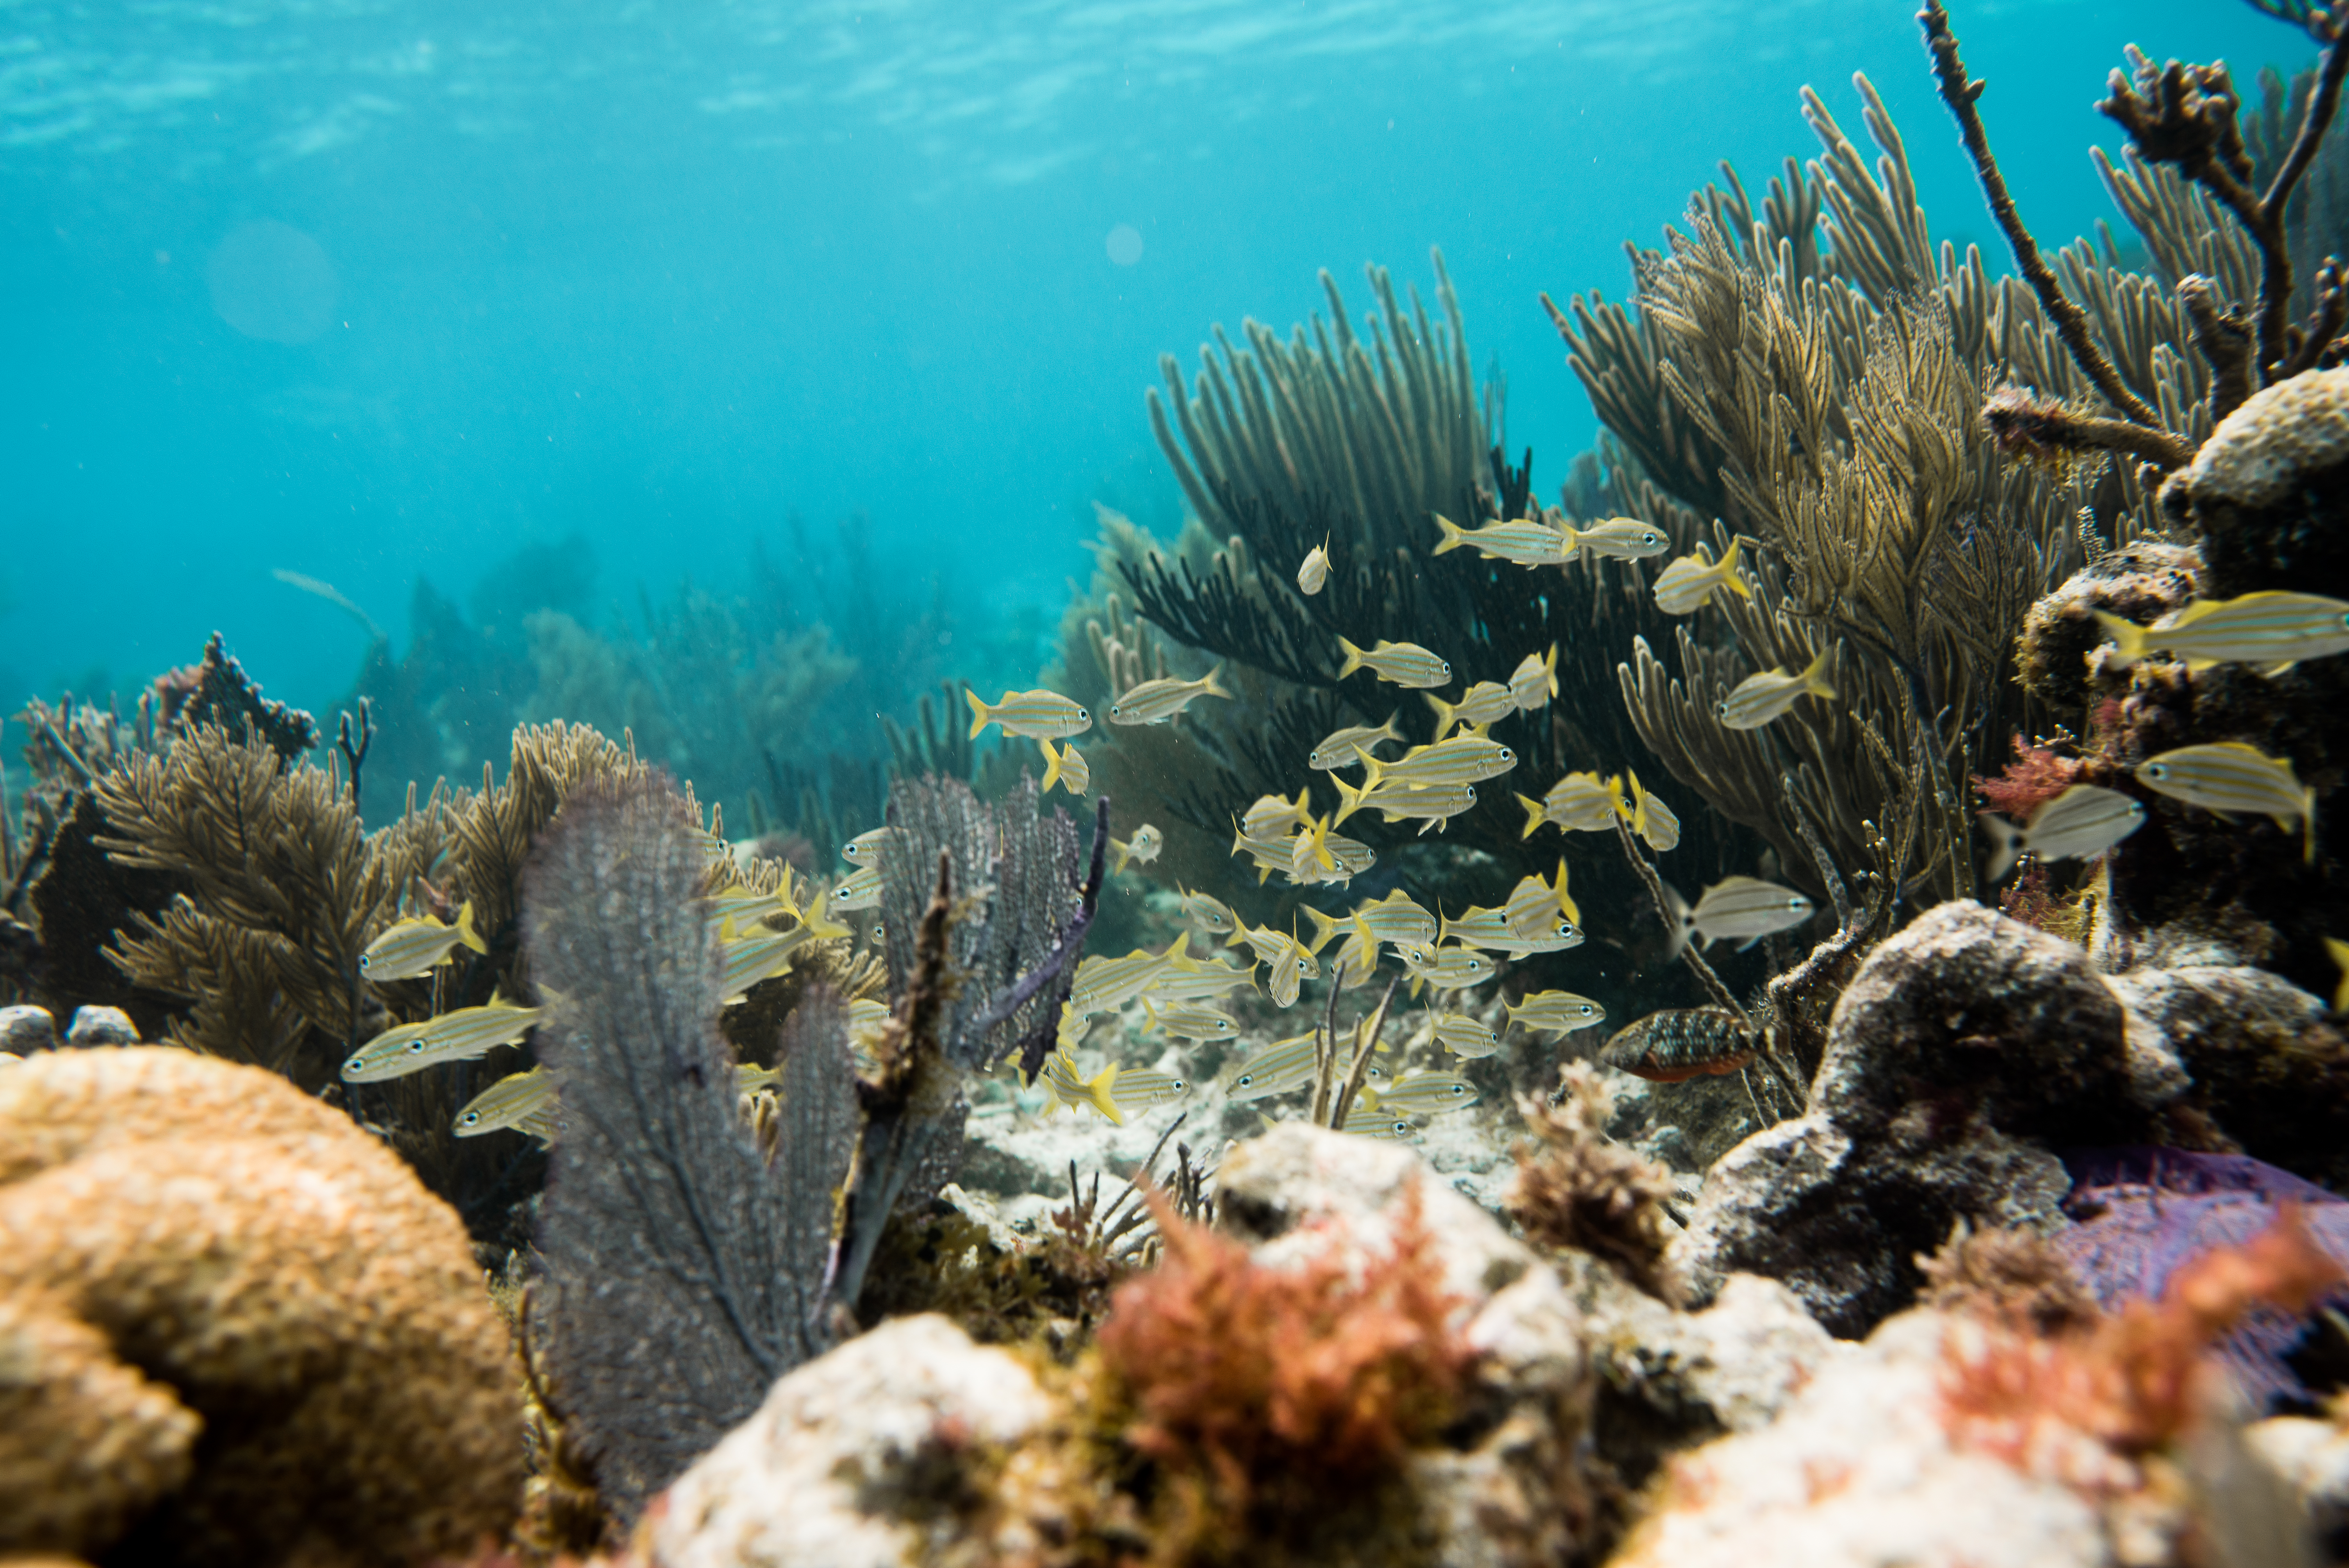 Pennekamp Reef